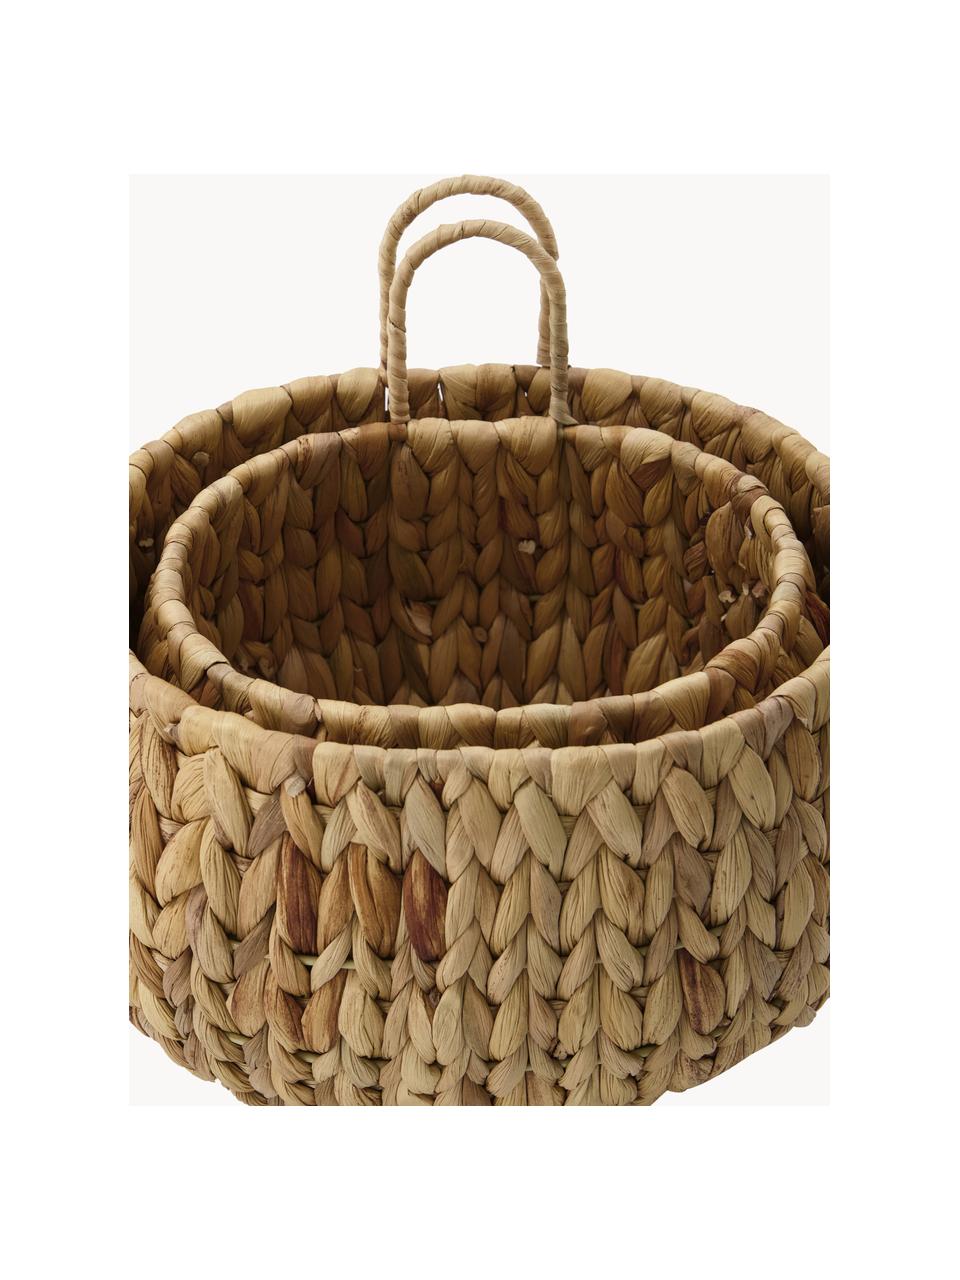 Set de cestas para colgar, 2 uds., Cesta: jacintos de agua, Estructura: alambre de acero, Marrón, Set de diferentes tamaños